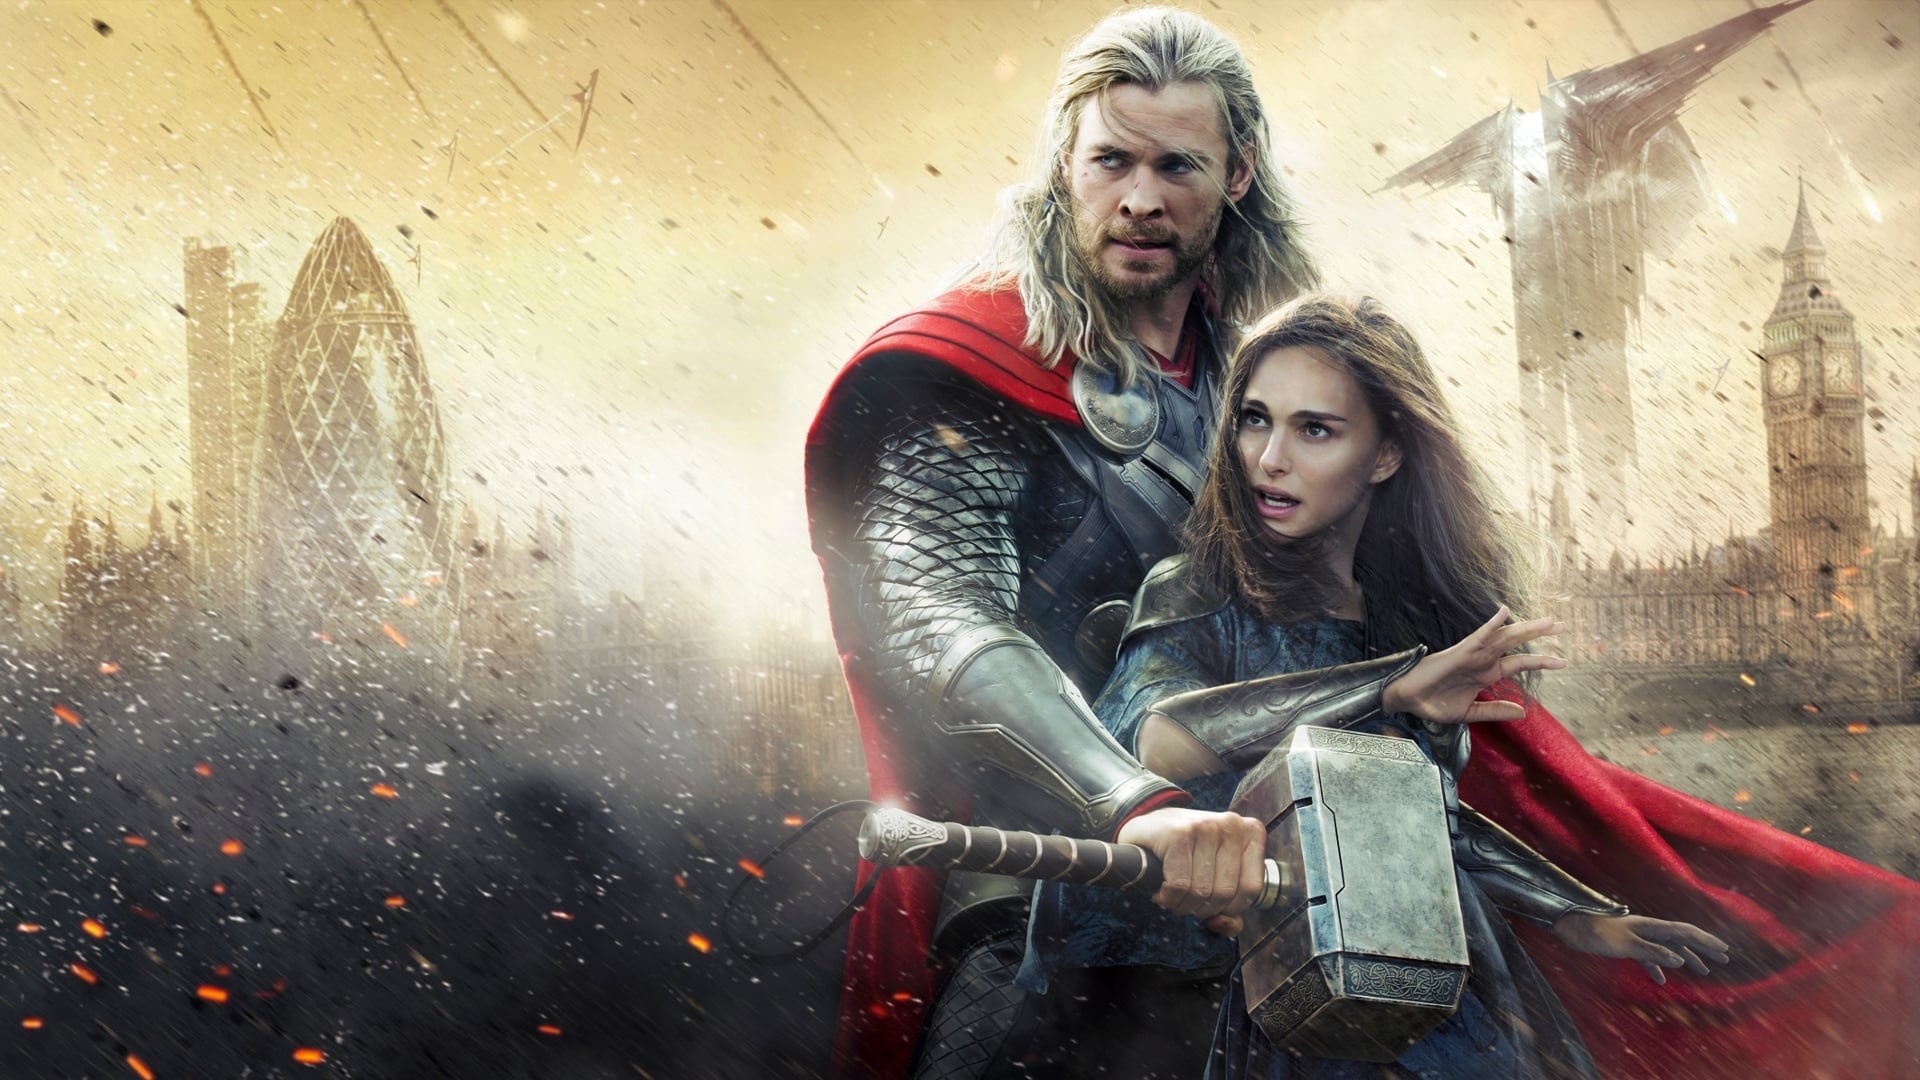  Thor: Sötét világ online teljes film (2013) 